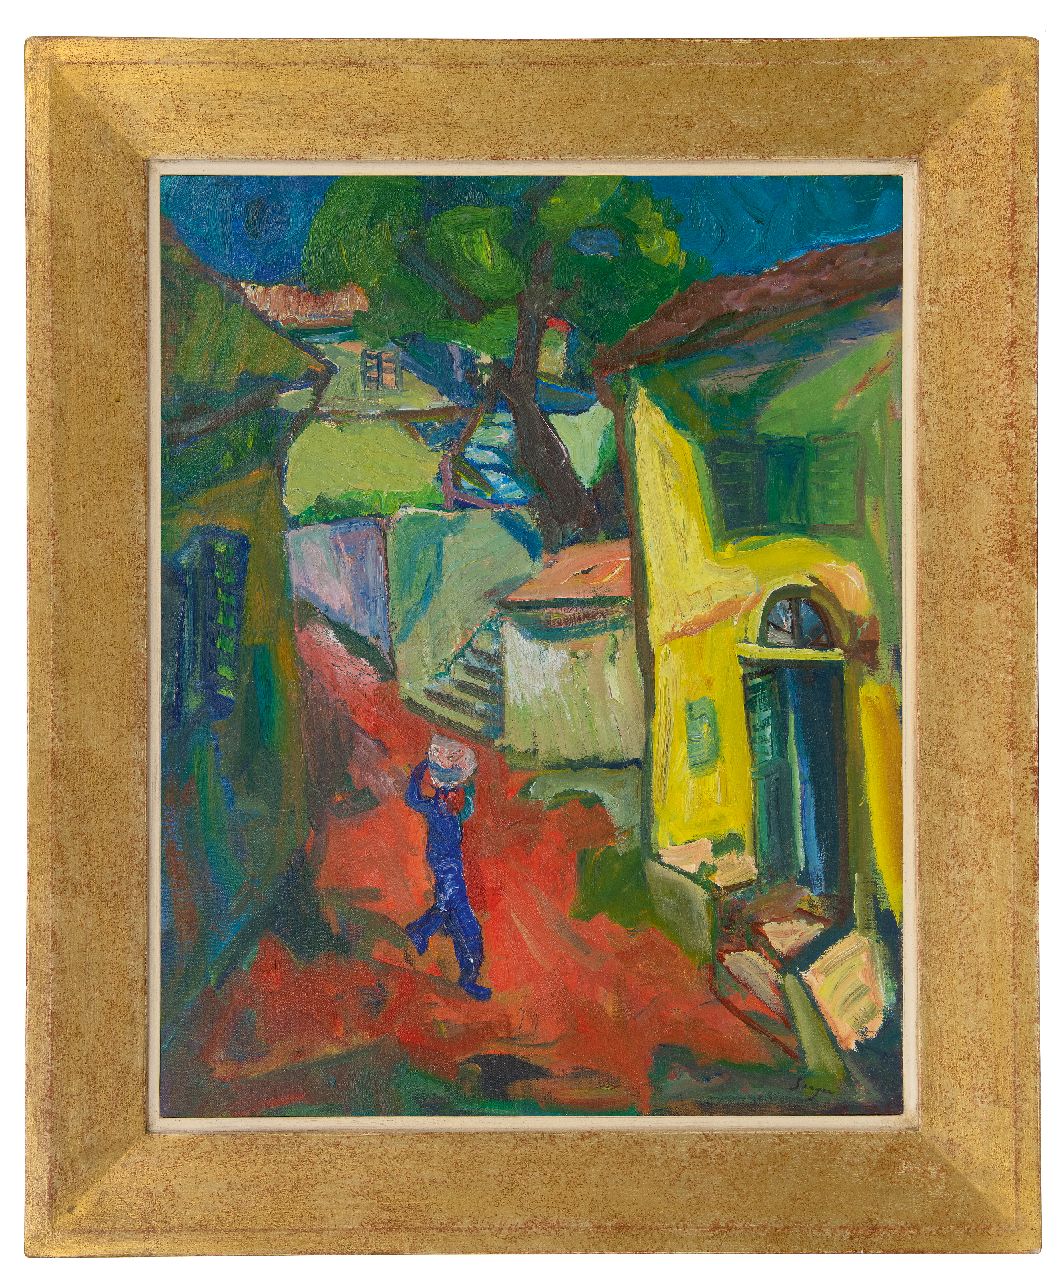 Serger F.B.  | Frederick Bedrich Serger | Schilderijen te koop aangeboden | Mediterraans dorpje, olieverf op doek 71,4 x 56,0 cm, gesigneerd rechtsonder